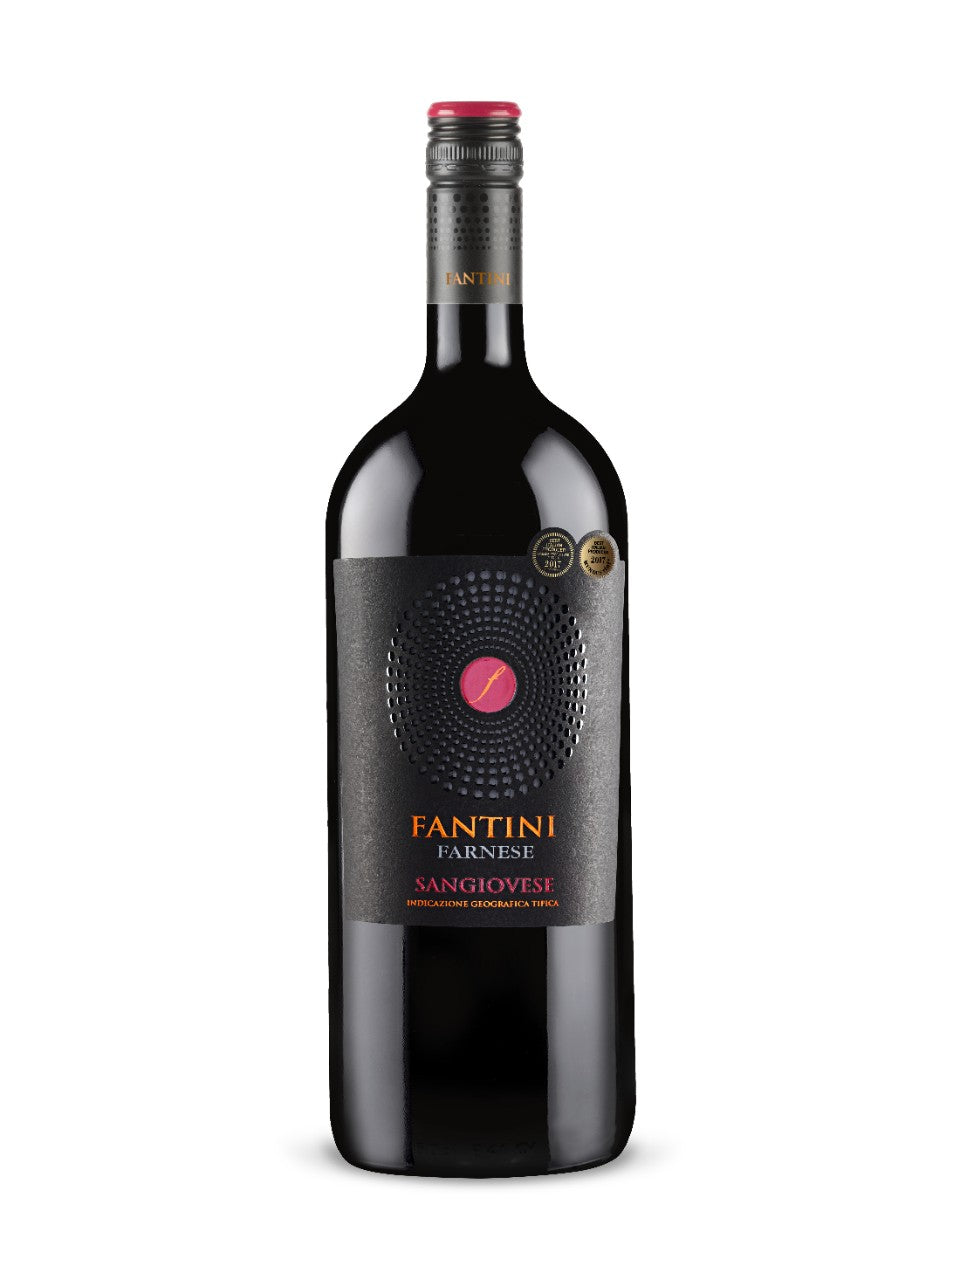 Fantini Farnese Sangiovese IGT 1500 ml bottle